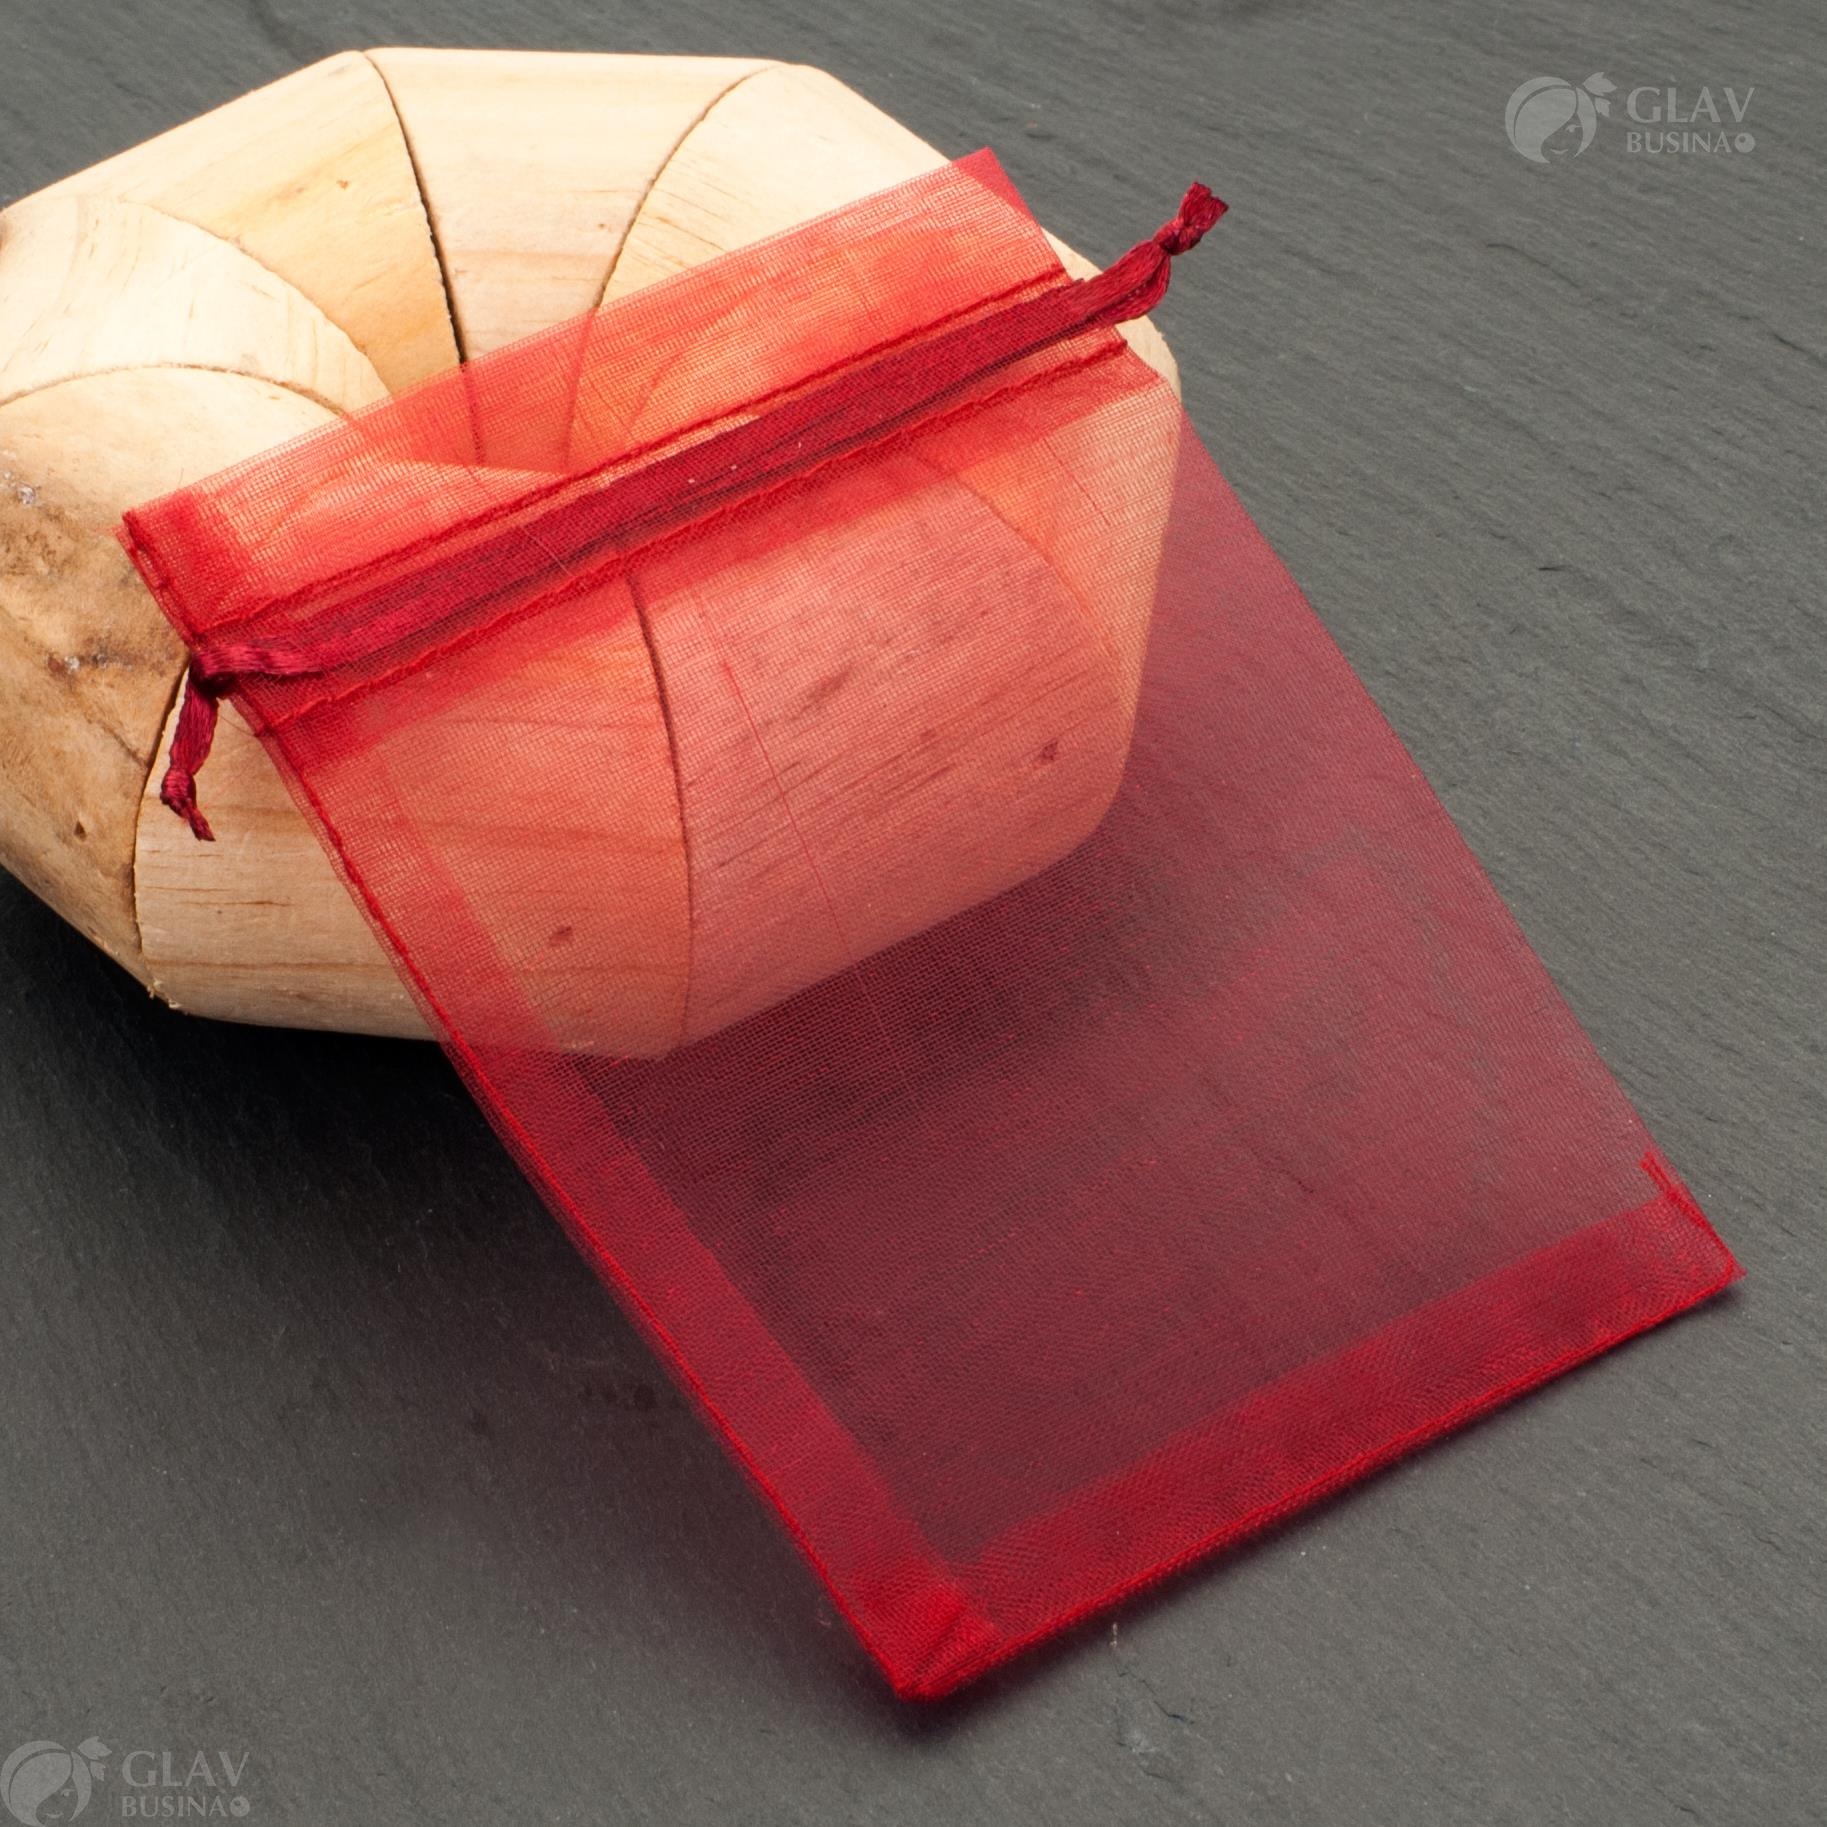 Бордовые мешочки из органзы с лентой, размером 9x12 см, идеальны для упаковки подарков и украшений.